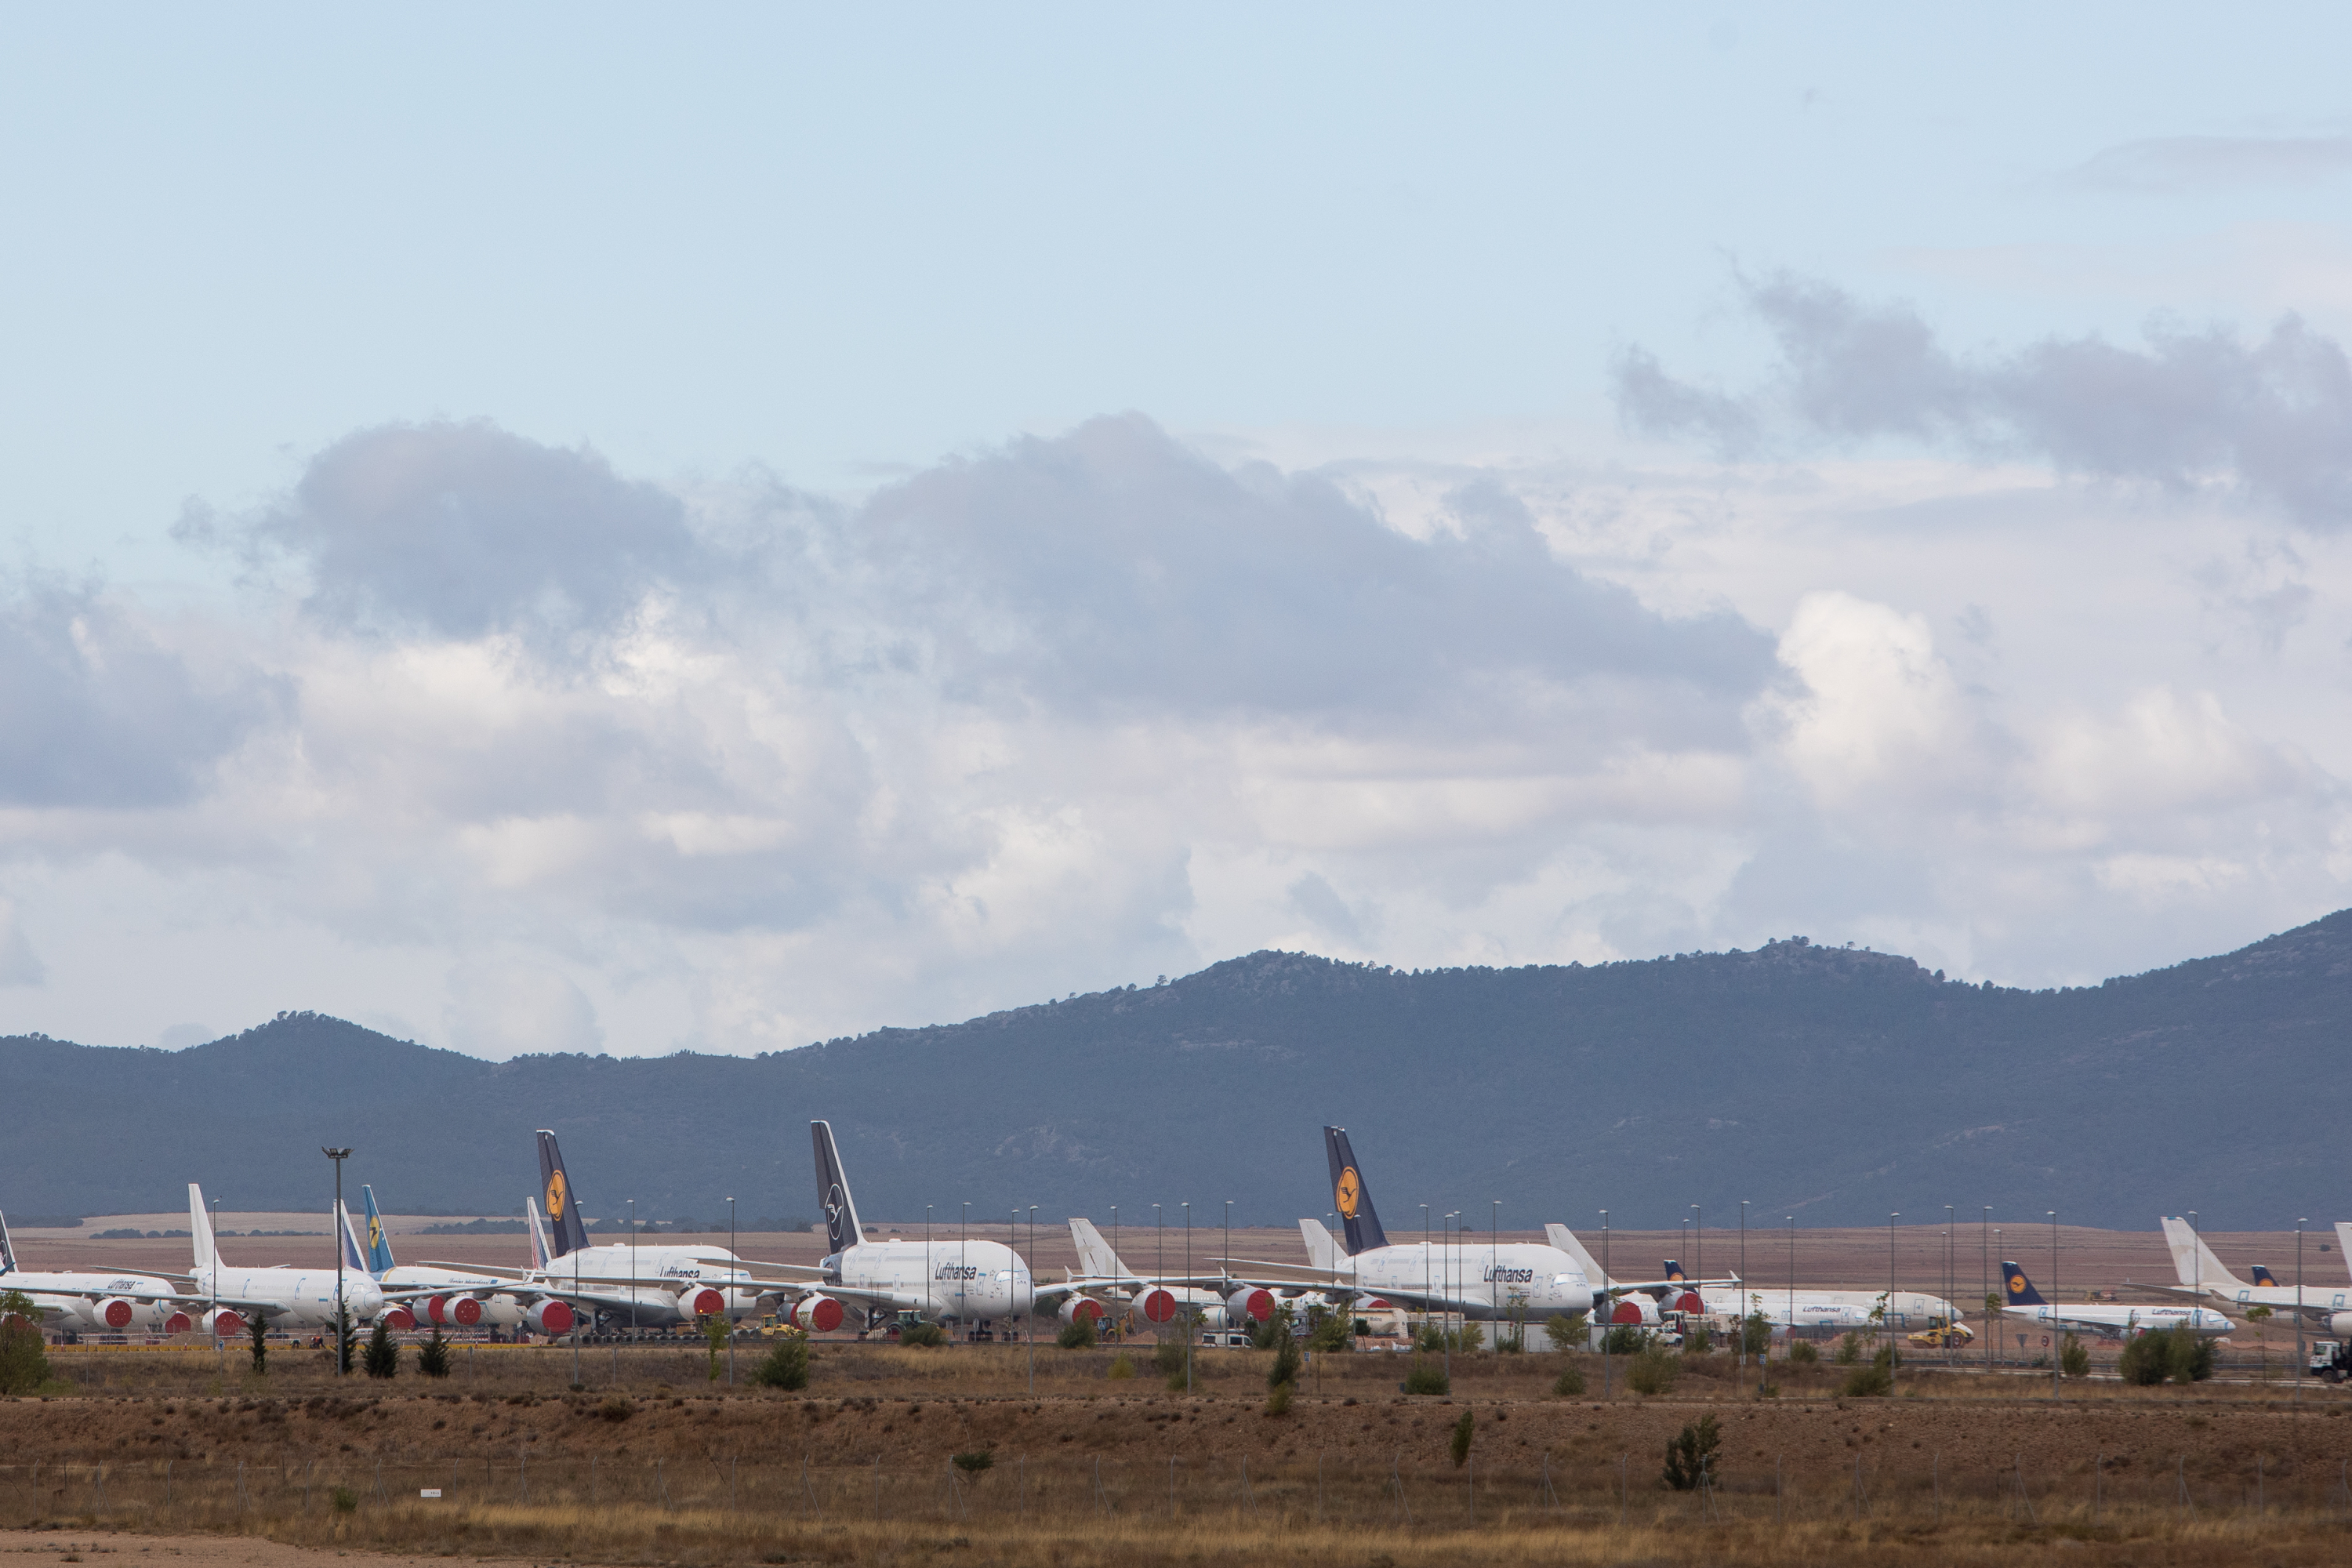 el aeropuerto fantasma español recibe 6 aviones de pasajeros del modelo más grande del mundo